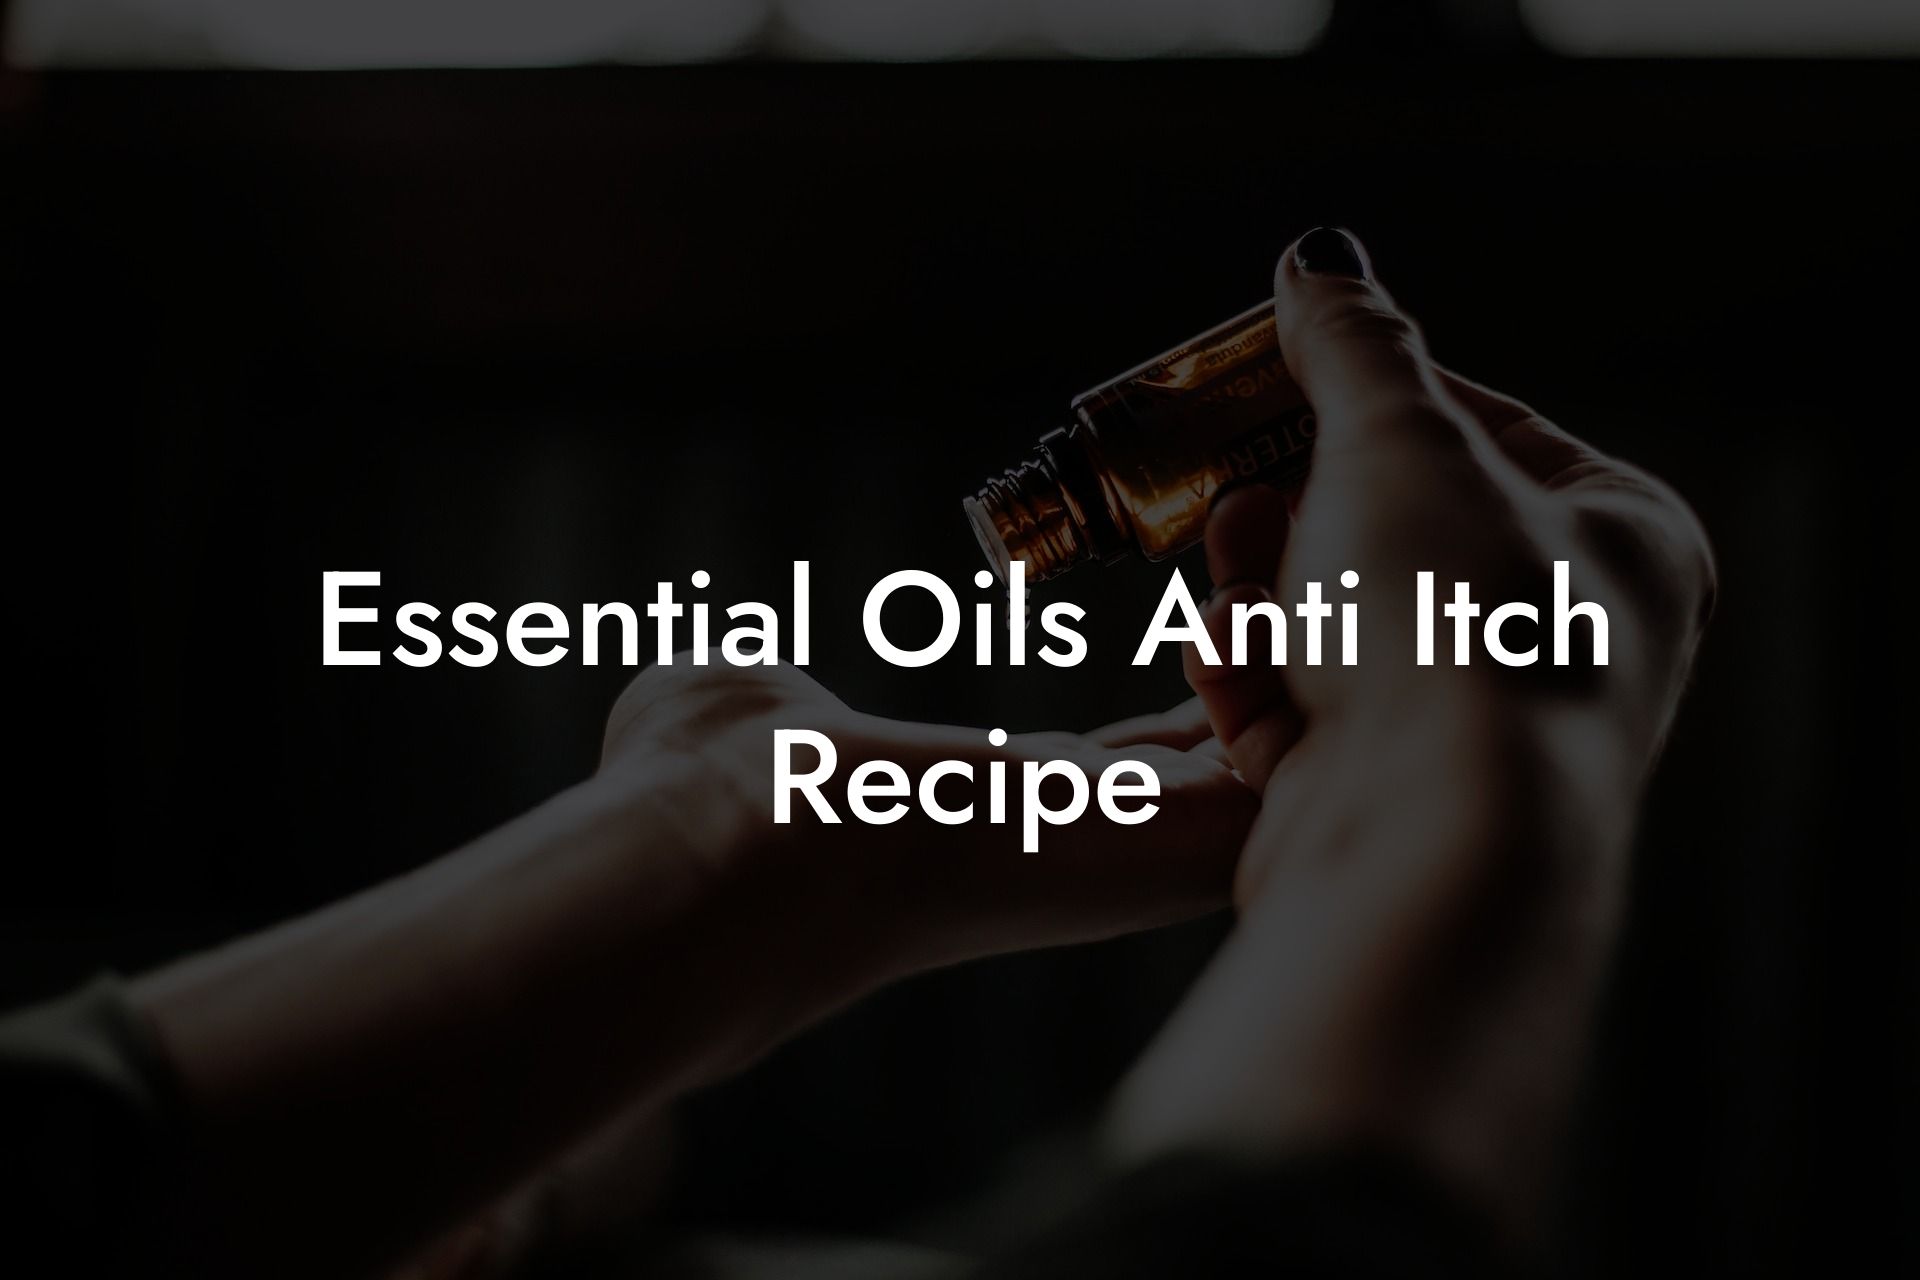 Essential Oils Anti Itch Recipe